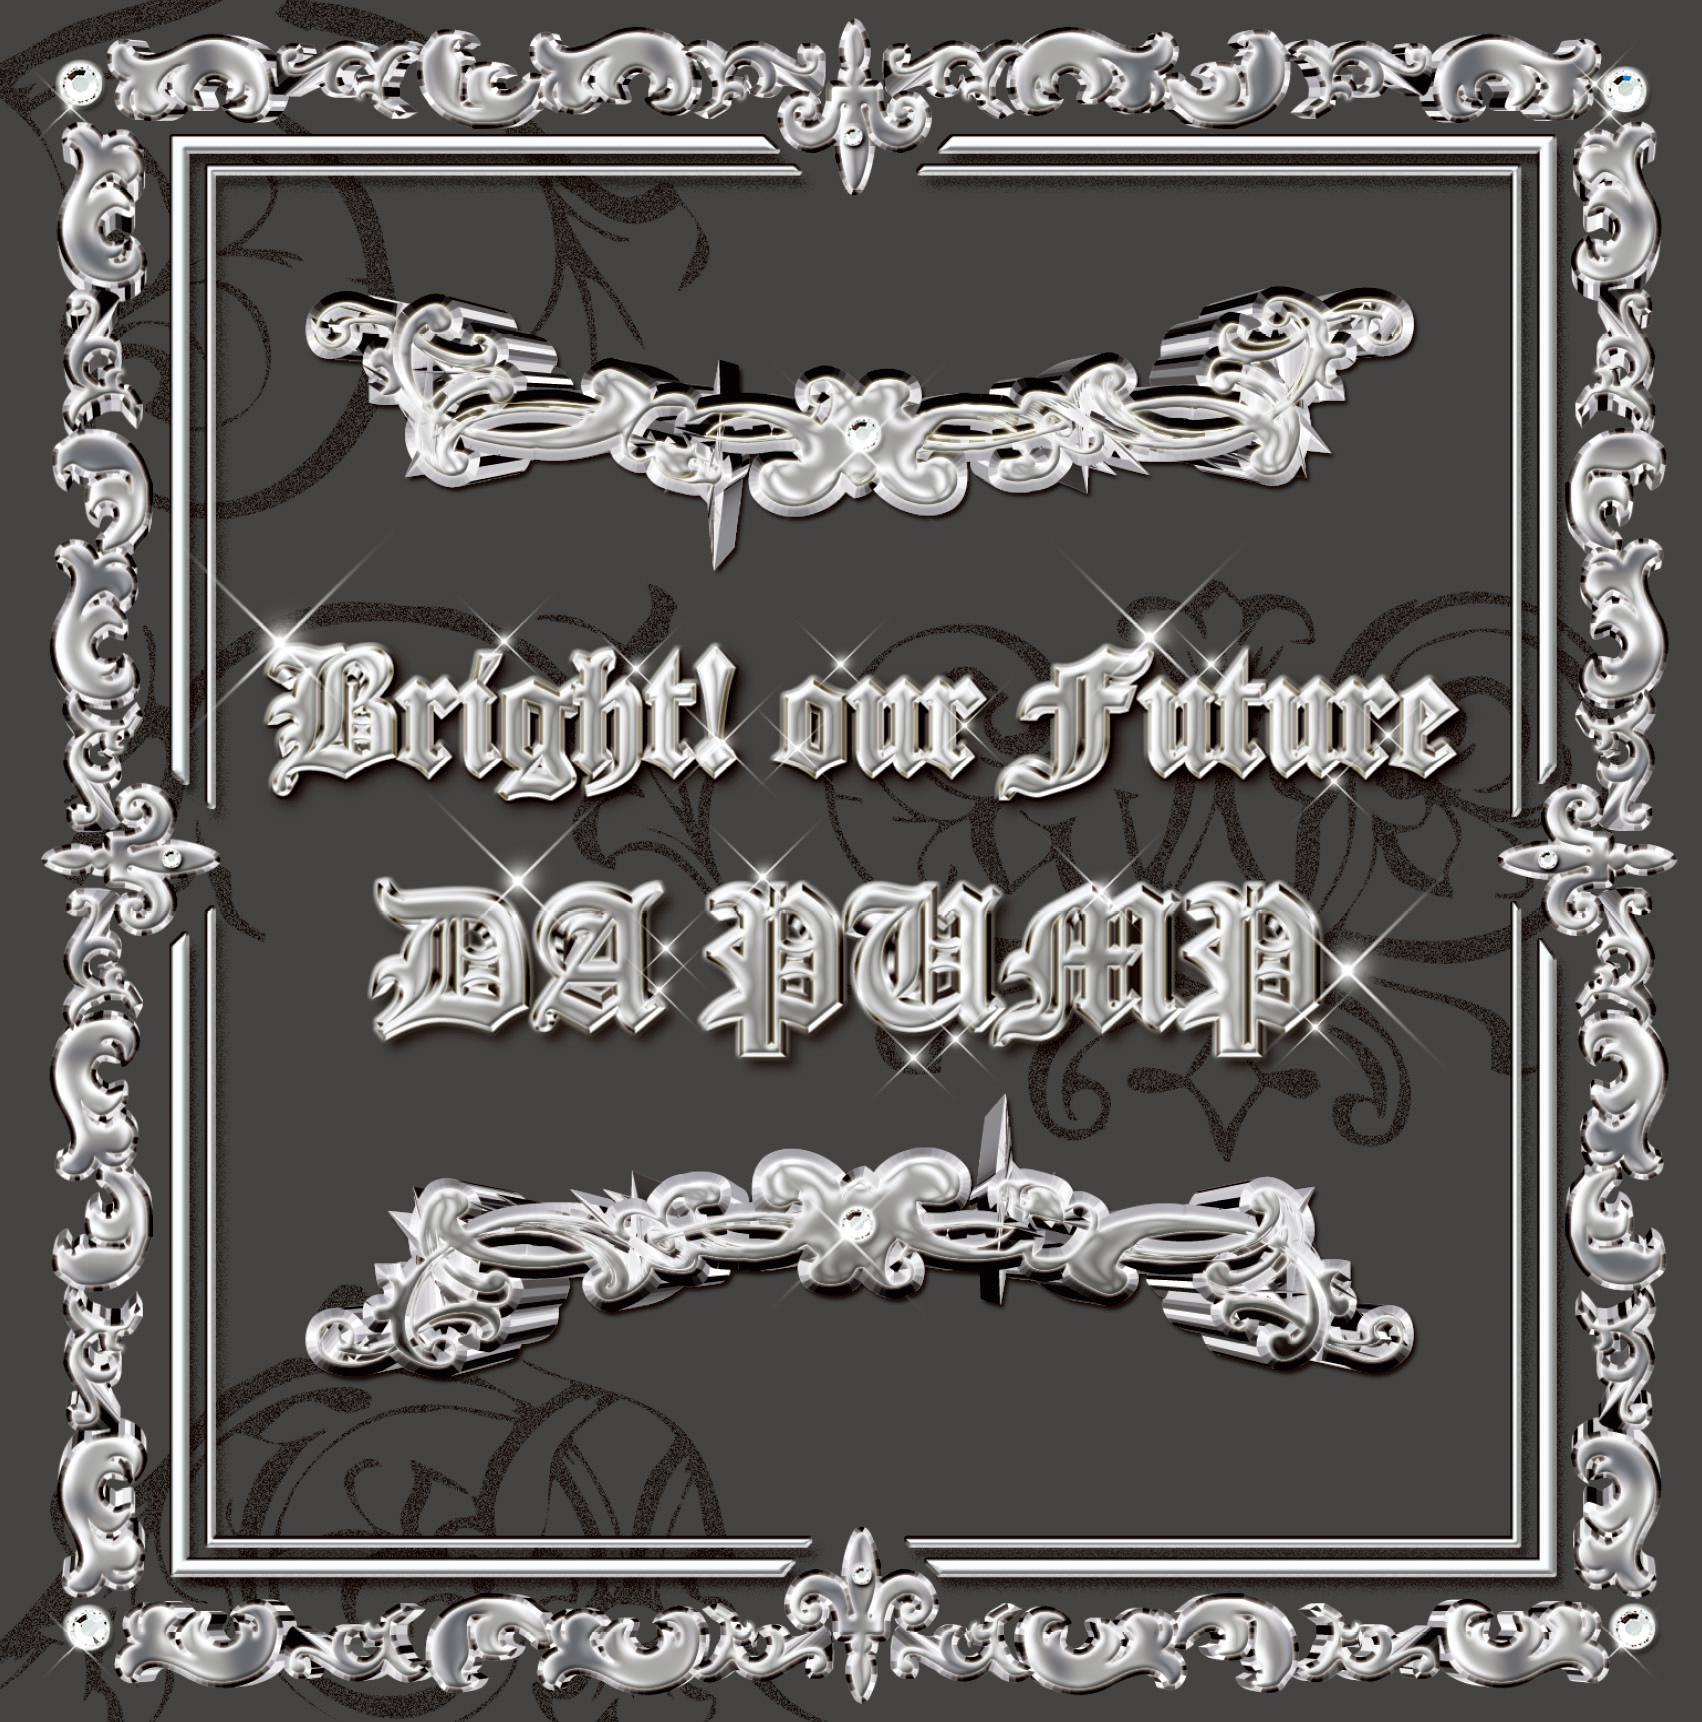 Bright! our Future专辑